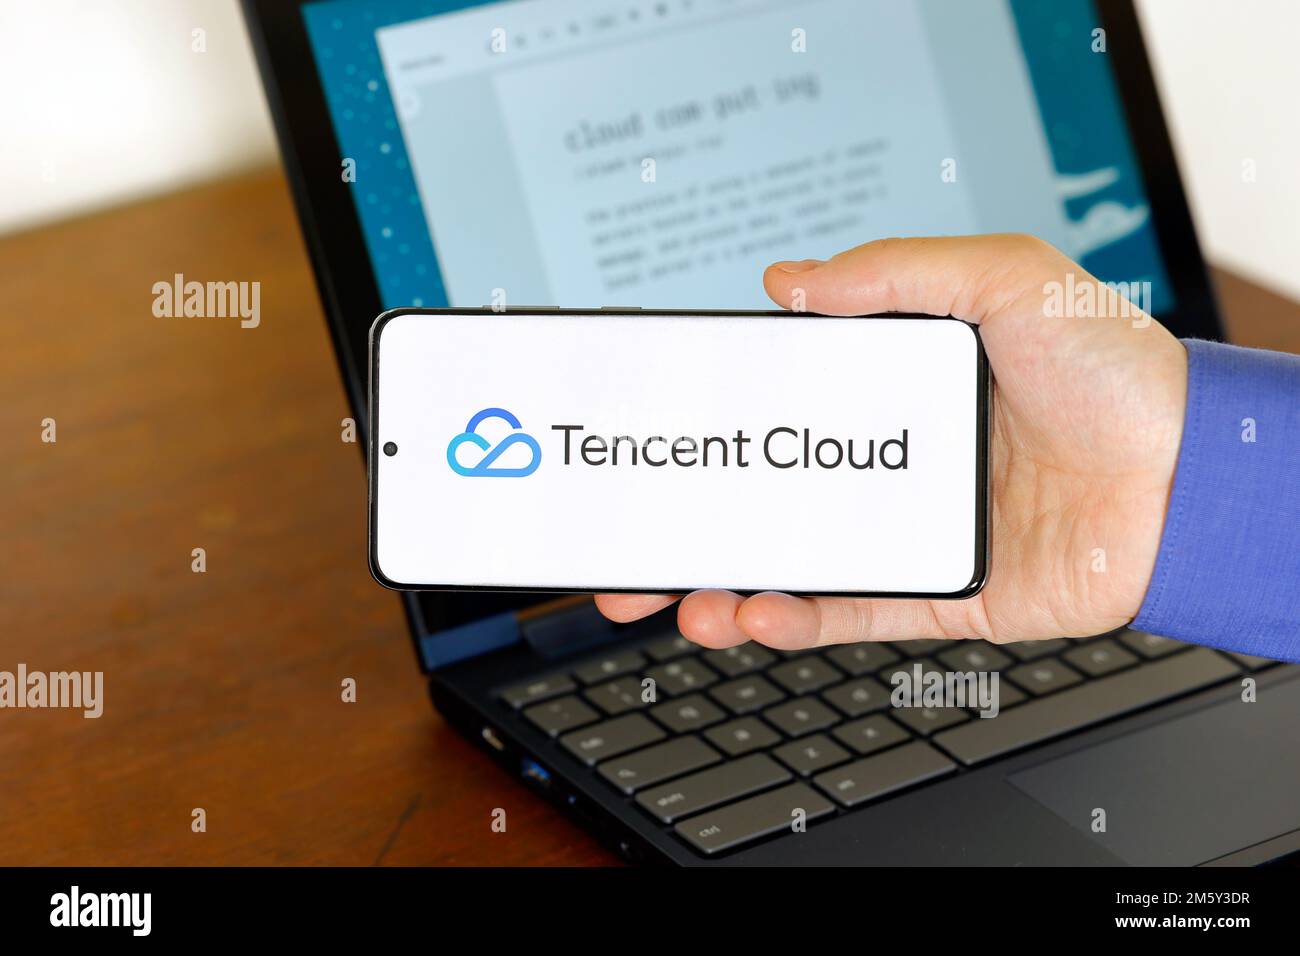 Logo von Tencent Cloud auf einem Smartphone vor einem Computer. Tencent Cloud ist ein Unternehmen für Cloud-Computing-Technologie, ein Subventionär von Tencent Holdings. Stockfoto